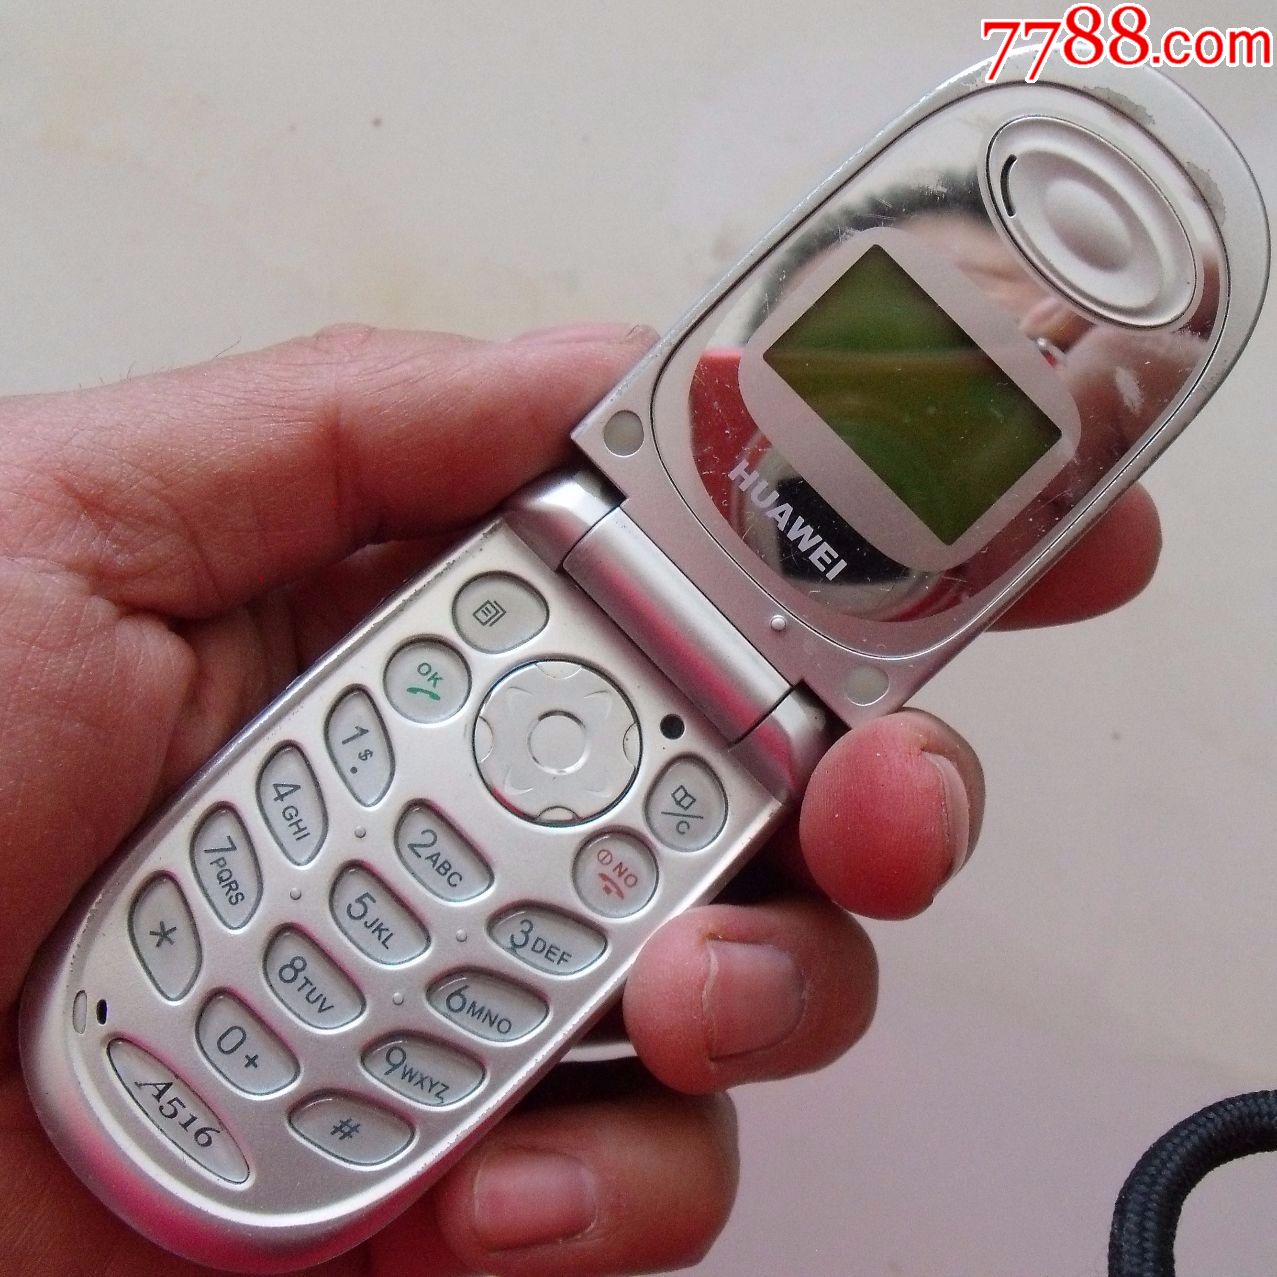 03年中国华为第一部手机a516(或模型样机(中国骄傲!附